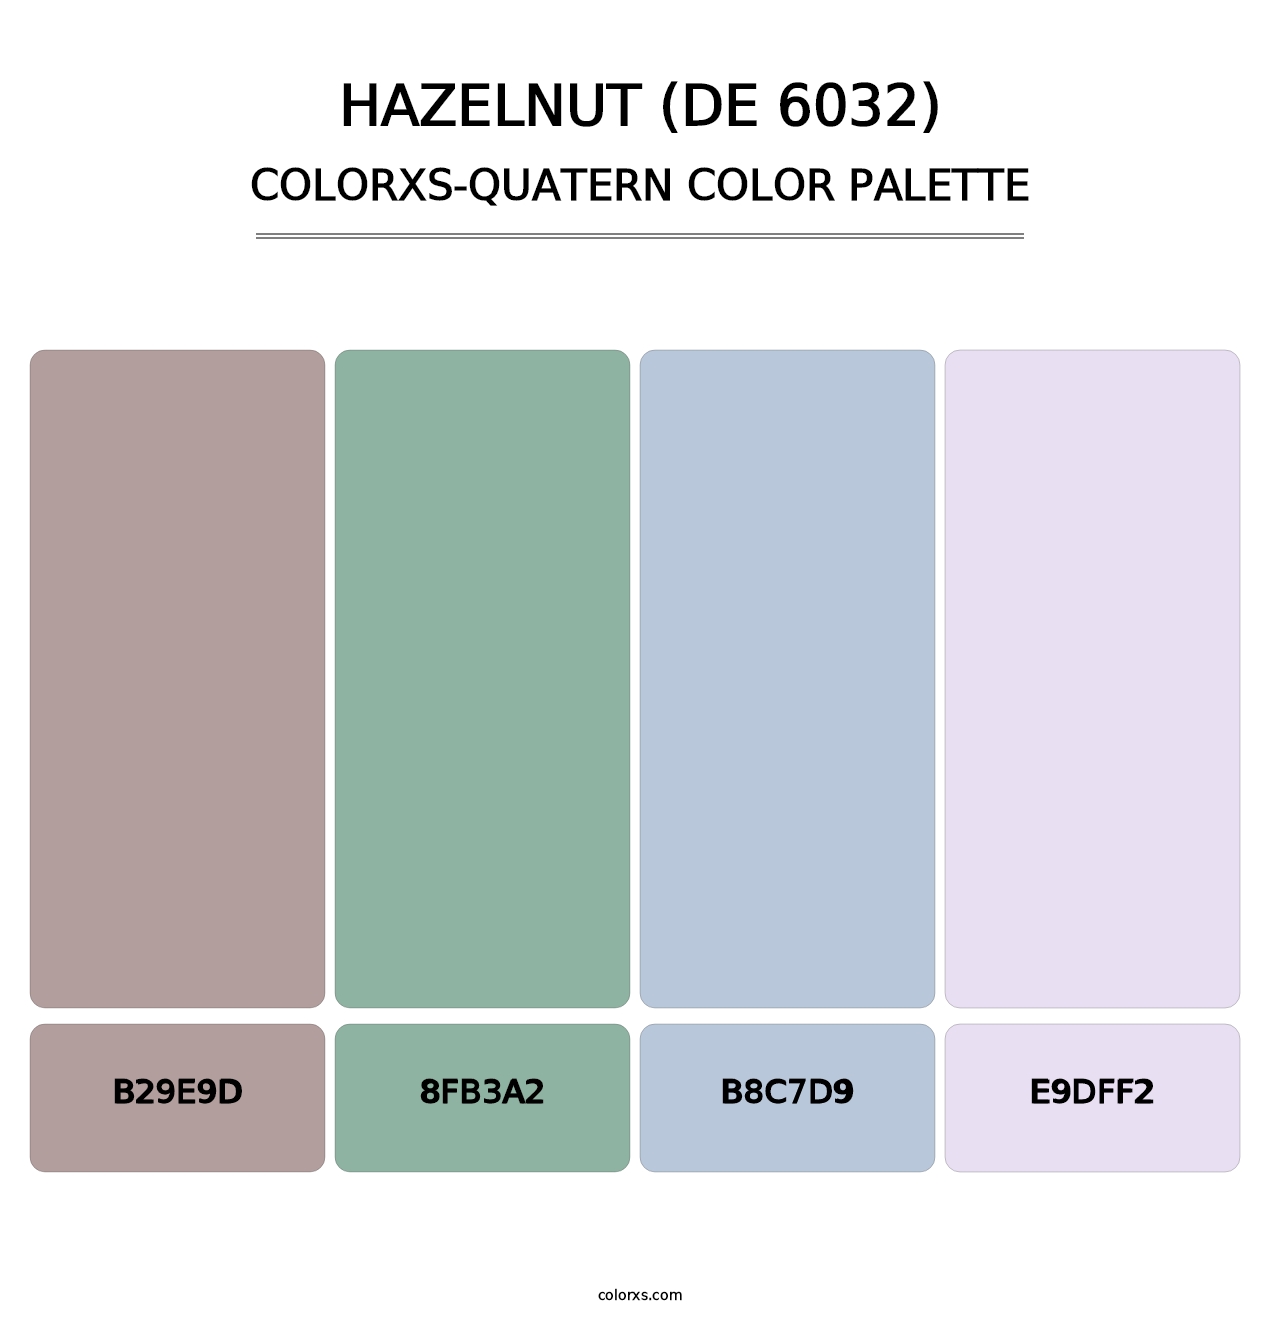 Hazelnut (DE 6032) - Colorxs Quatern Palette